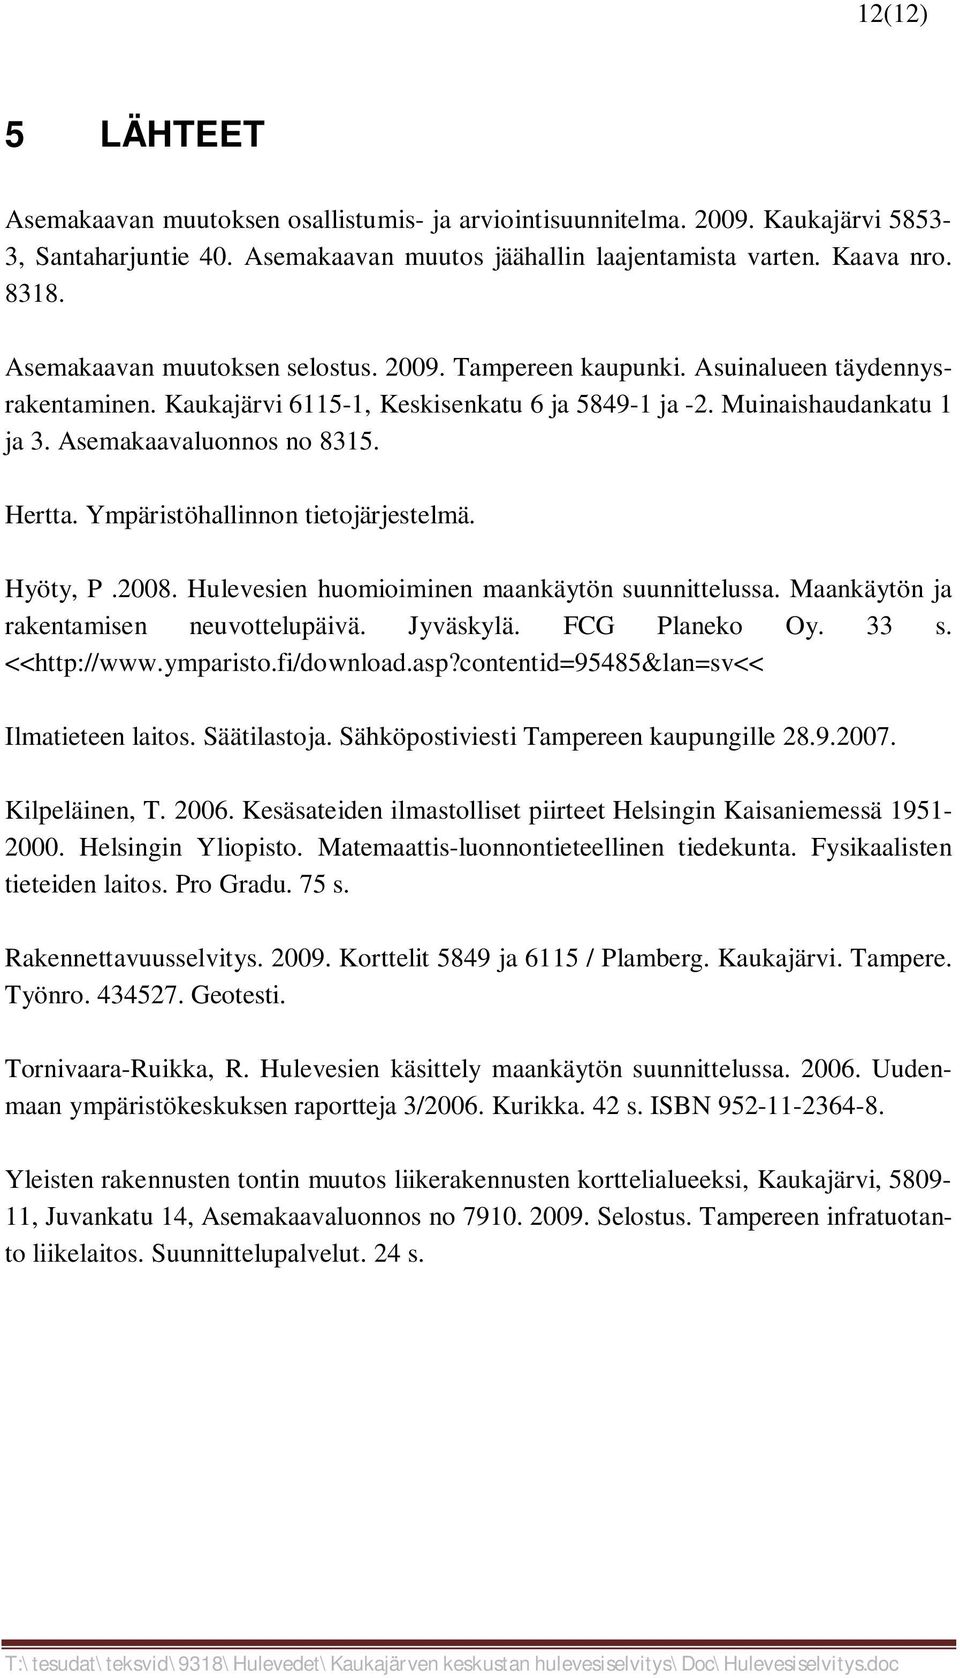 Hertta. Ympäristöhallinnon tietojärjestelmä. Hyöty, P.2008. Hulevesien huomioiminen maankäytön suunnittelussa. Maankäytön ja rakentamisen neuvottelupäivä. Jyväskylä. FCG Planeko Oy. 33 s.